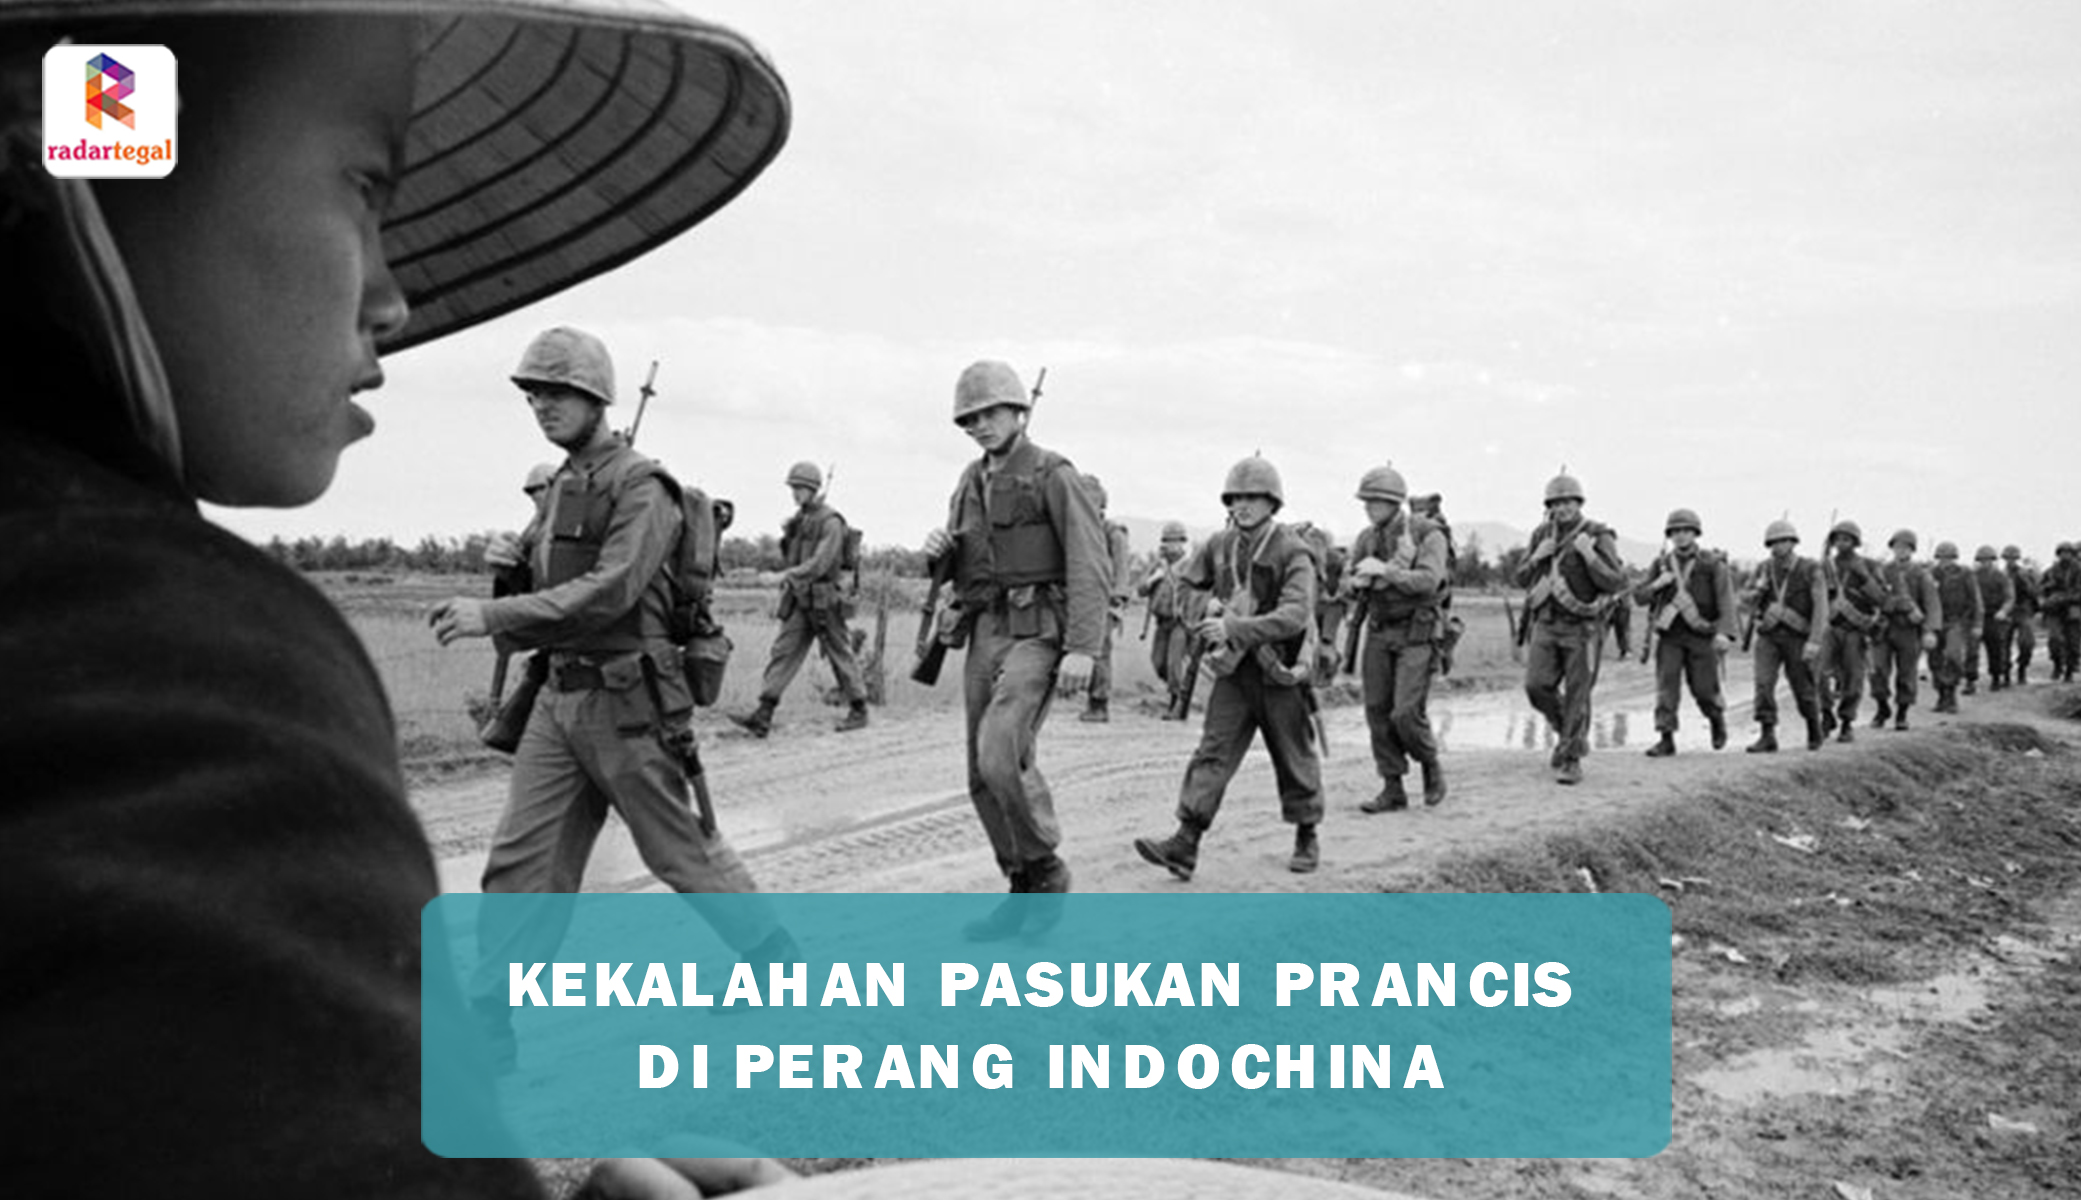 Perang Indochina Pertama Tumbangkan Pasukan Militer Prancis di Vietnam, Ini Penyebabnya